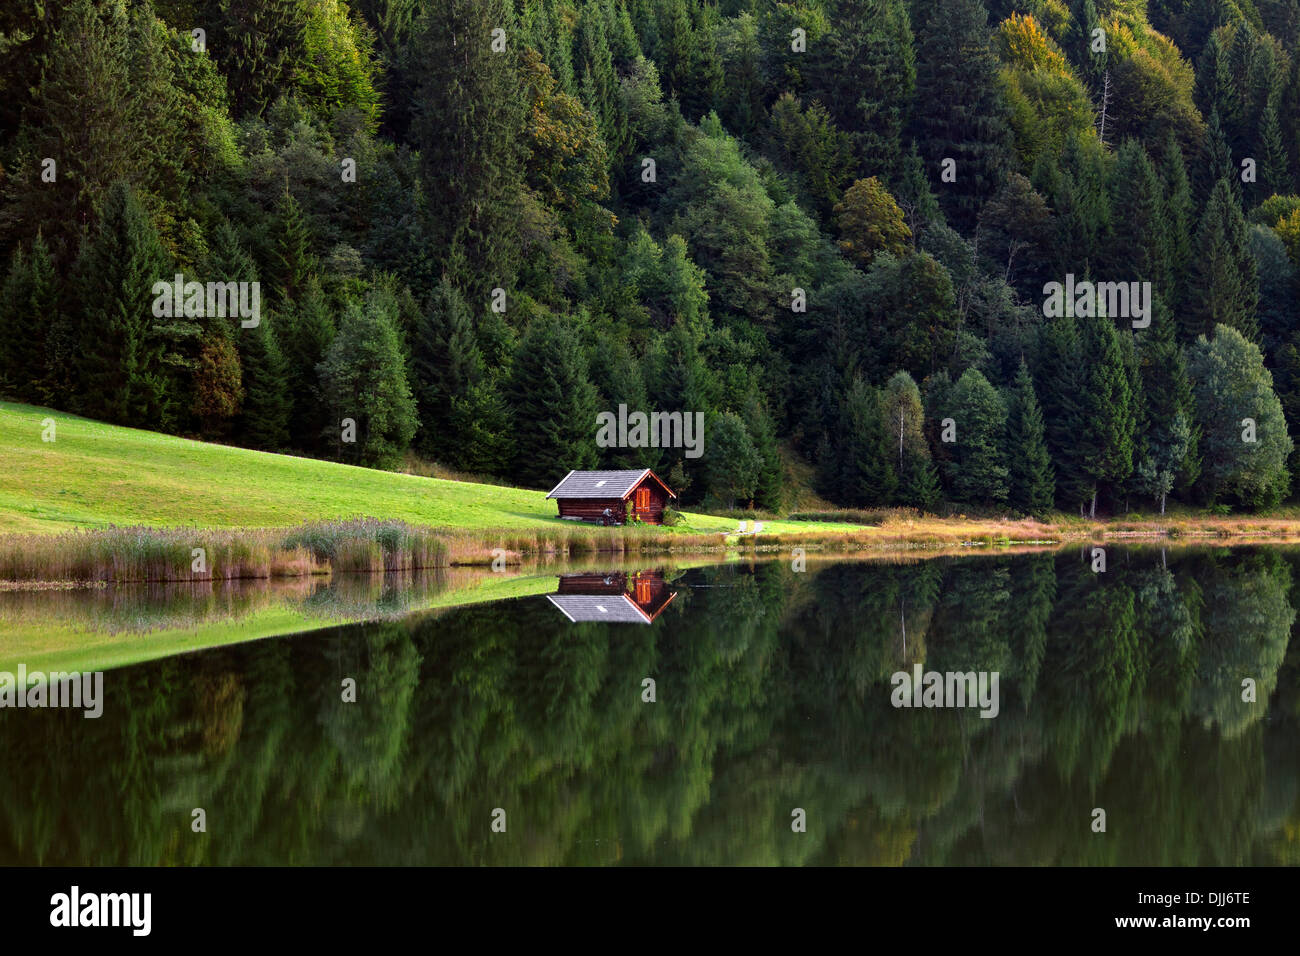 Cabane en bois et forêt de pins de réflexion dans l'eau le long du lac Gerold / Geroldsee près de Mittenwald, Haute-Bavière, Allemagne Banque D'Images